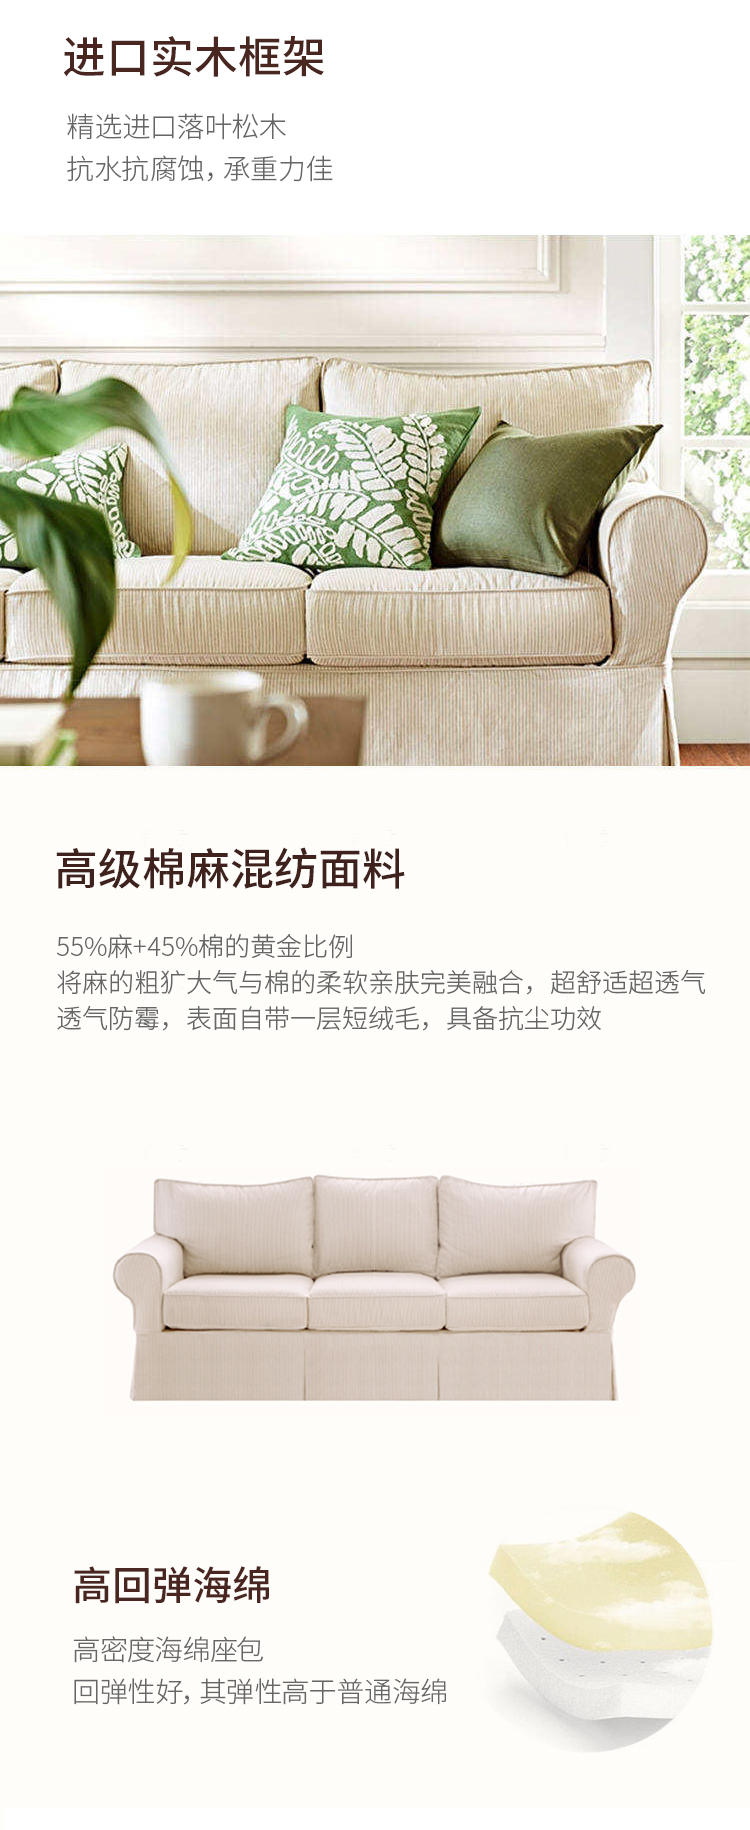 简约美式风格乔治沙发（样品特惠）的家具详细介绍